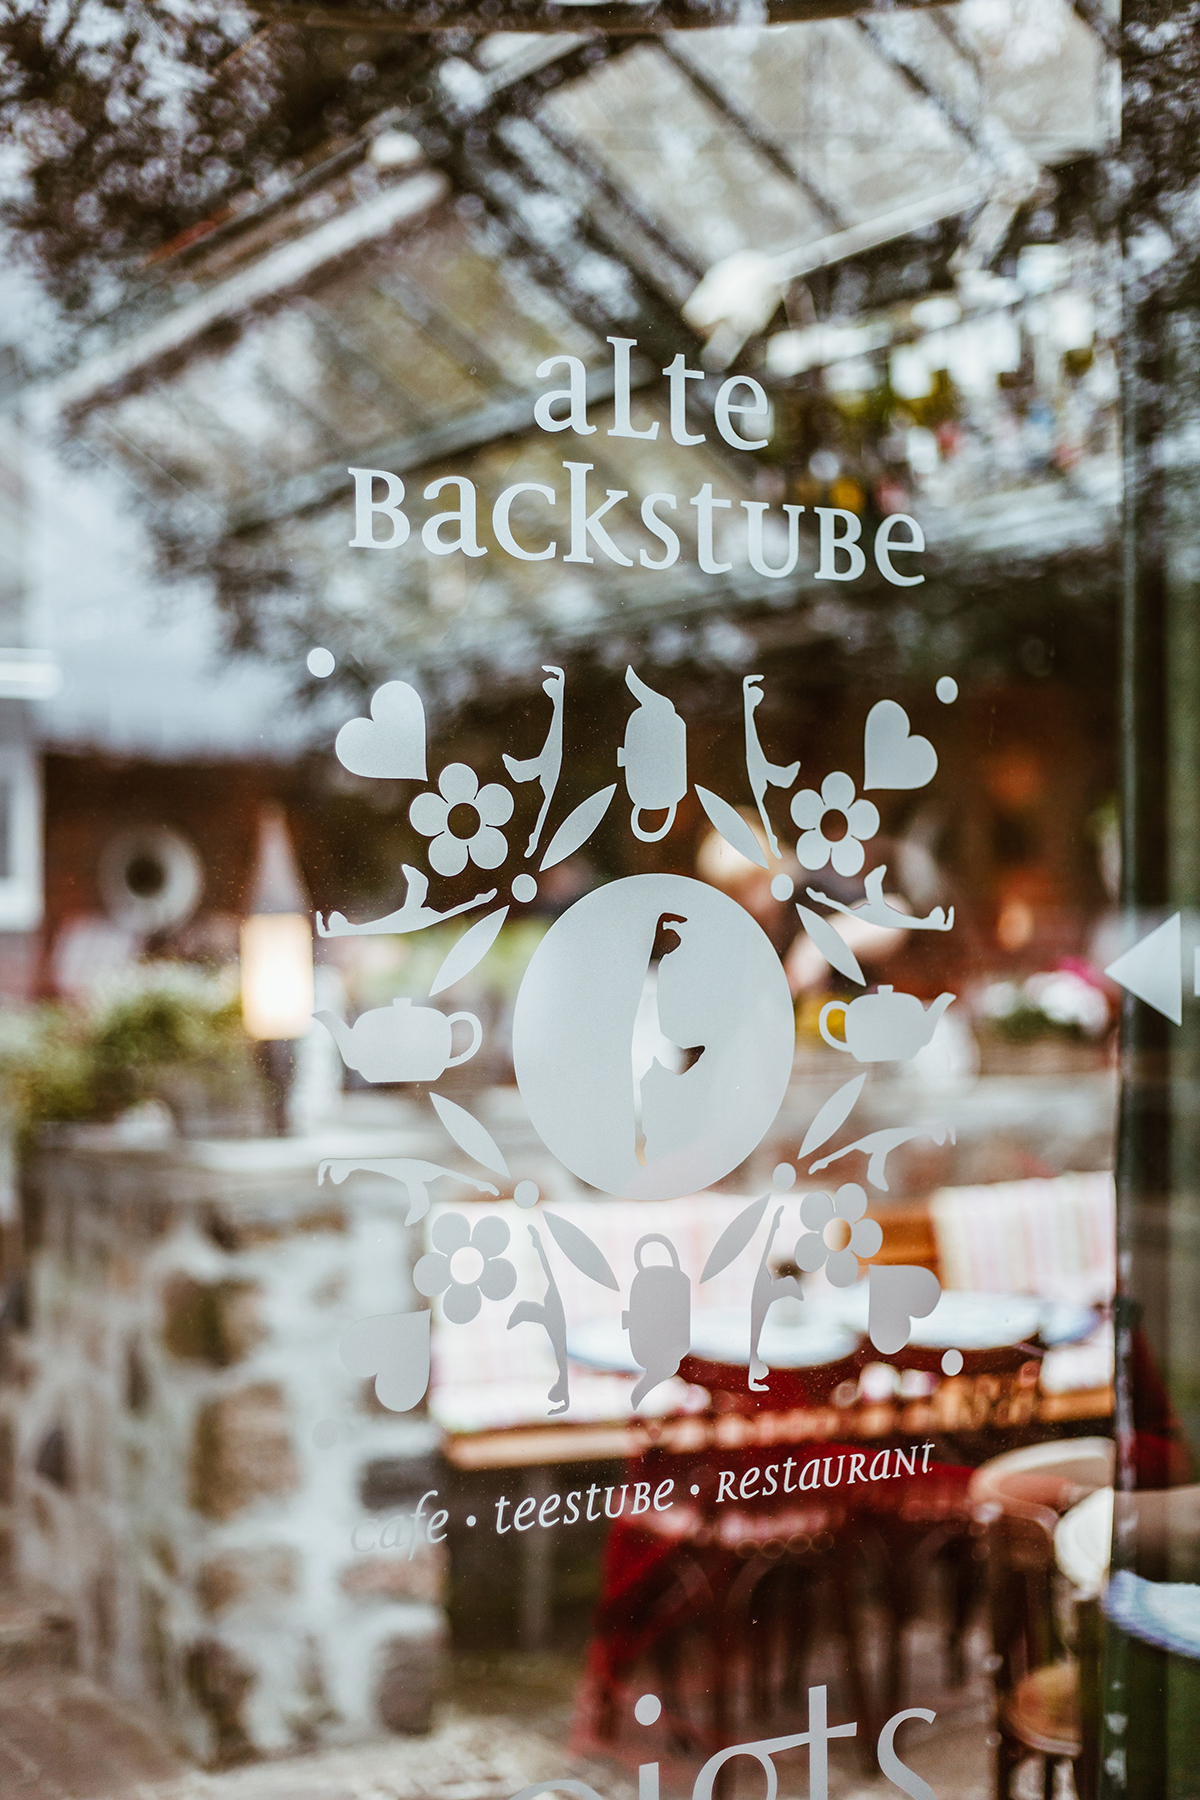 Voigts Alte Backstube in List: Entdecke das Café, Teestube & Restaurant